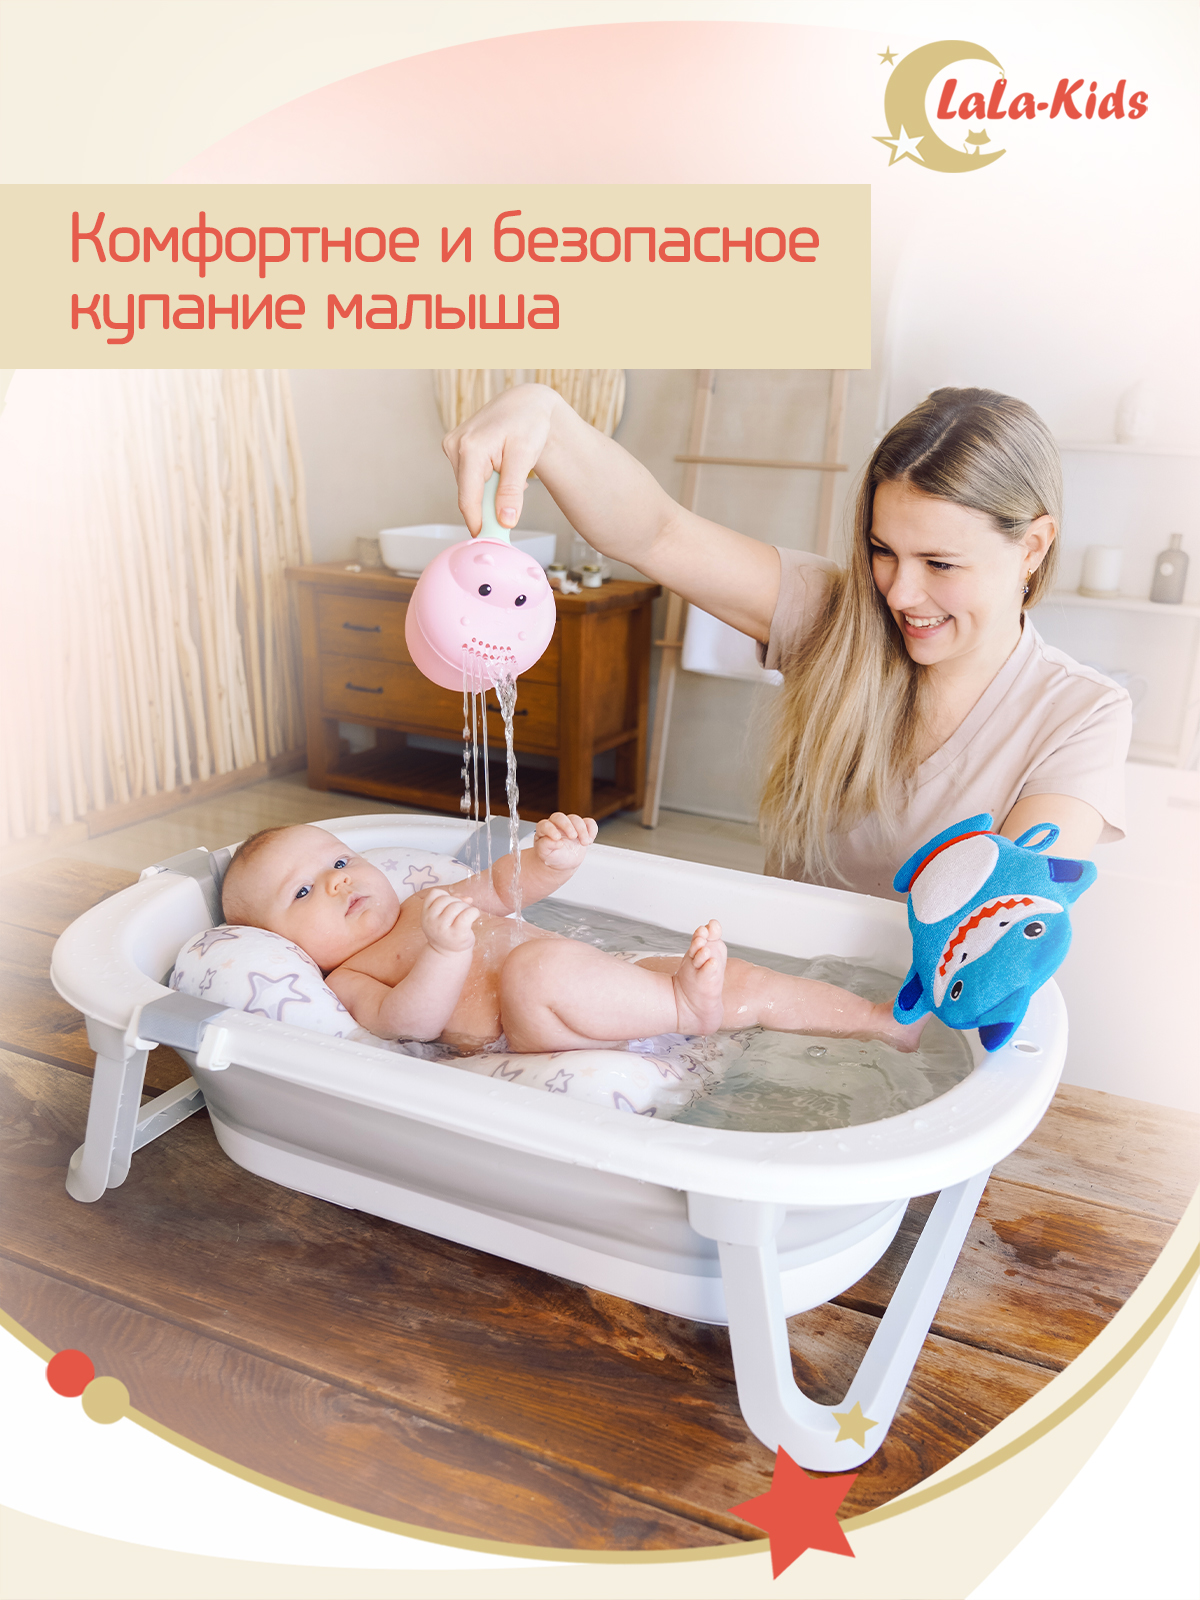 Детская ванночка с термометром LaLa-Kids складная с матрасиком персиковым в комплекте - фото 3